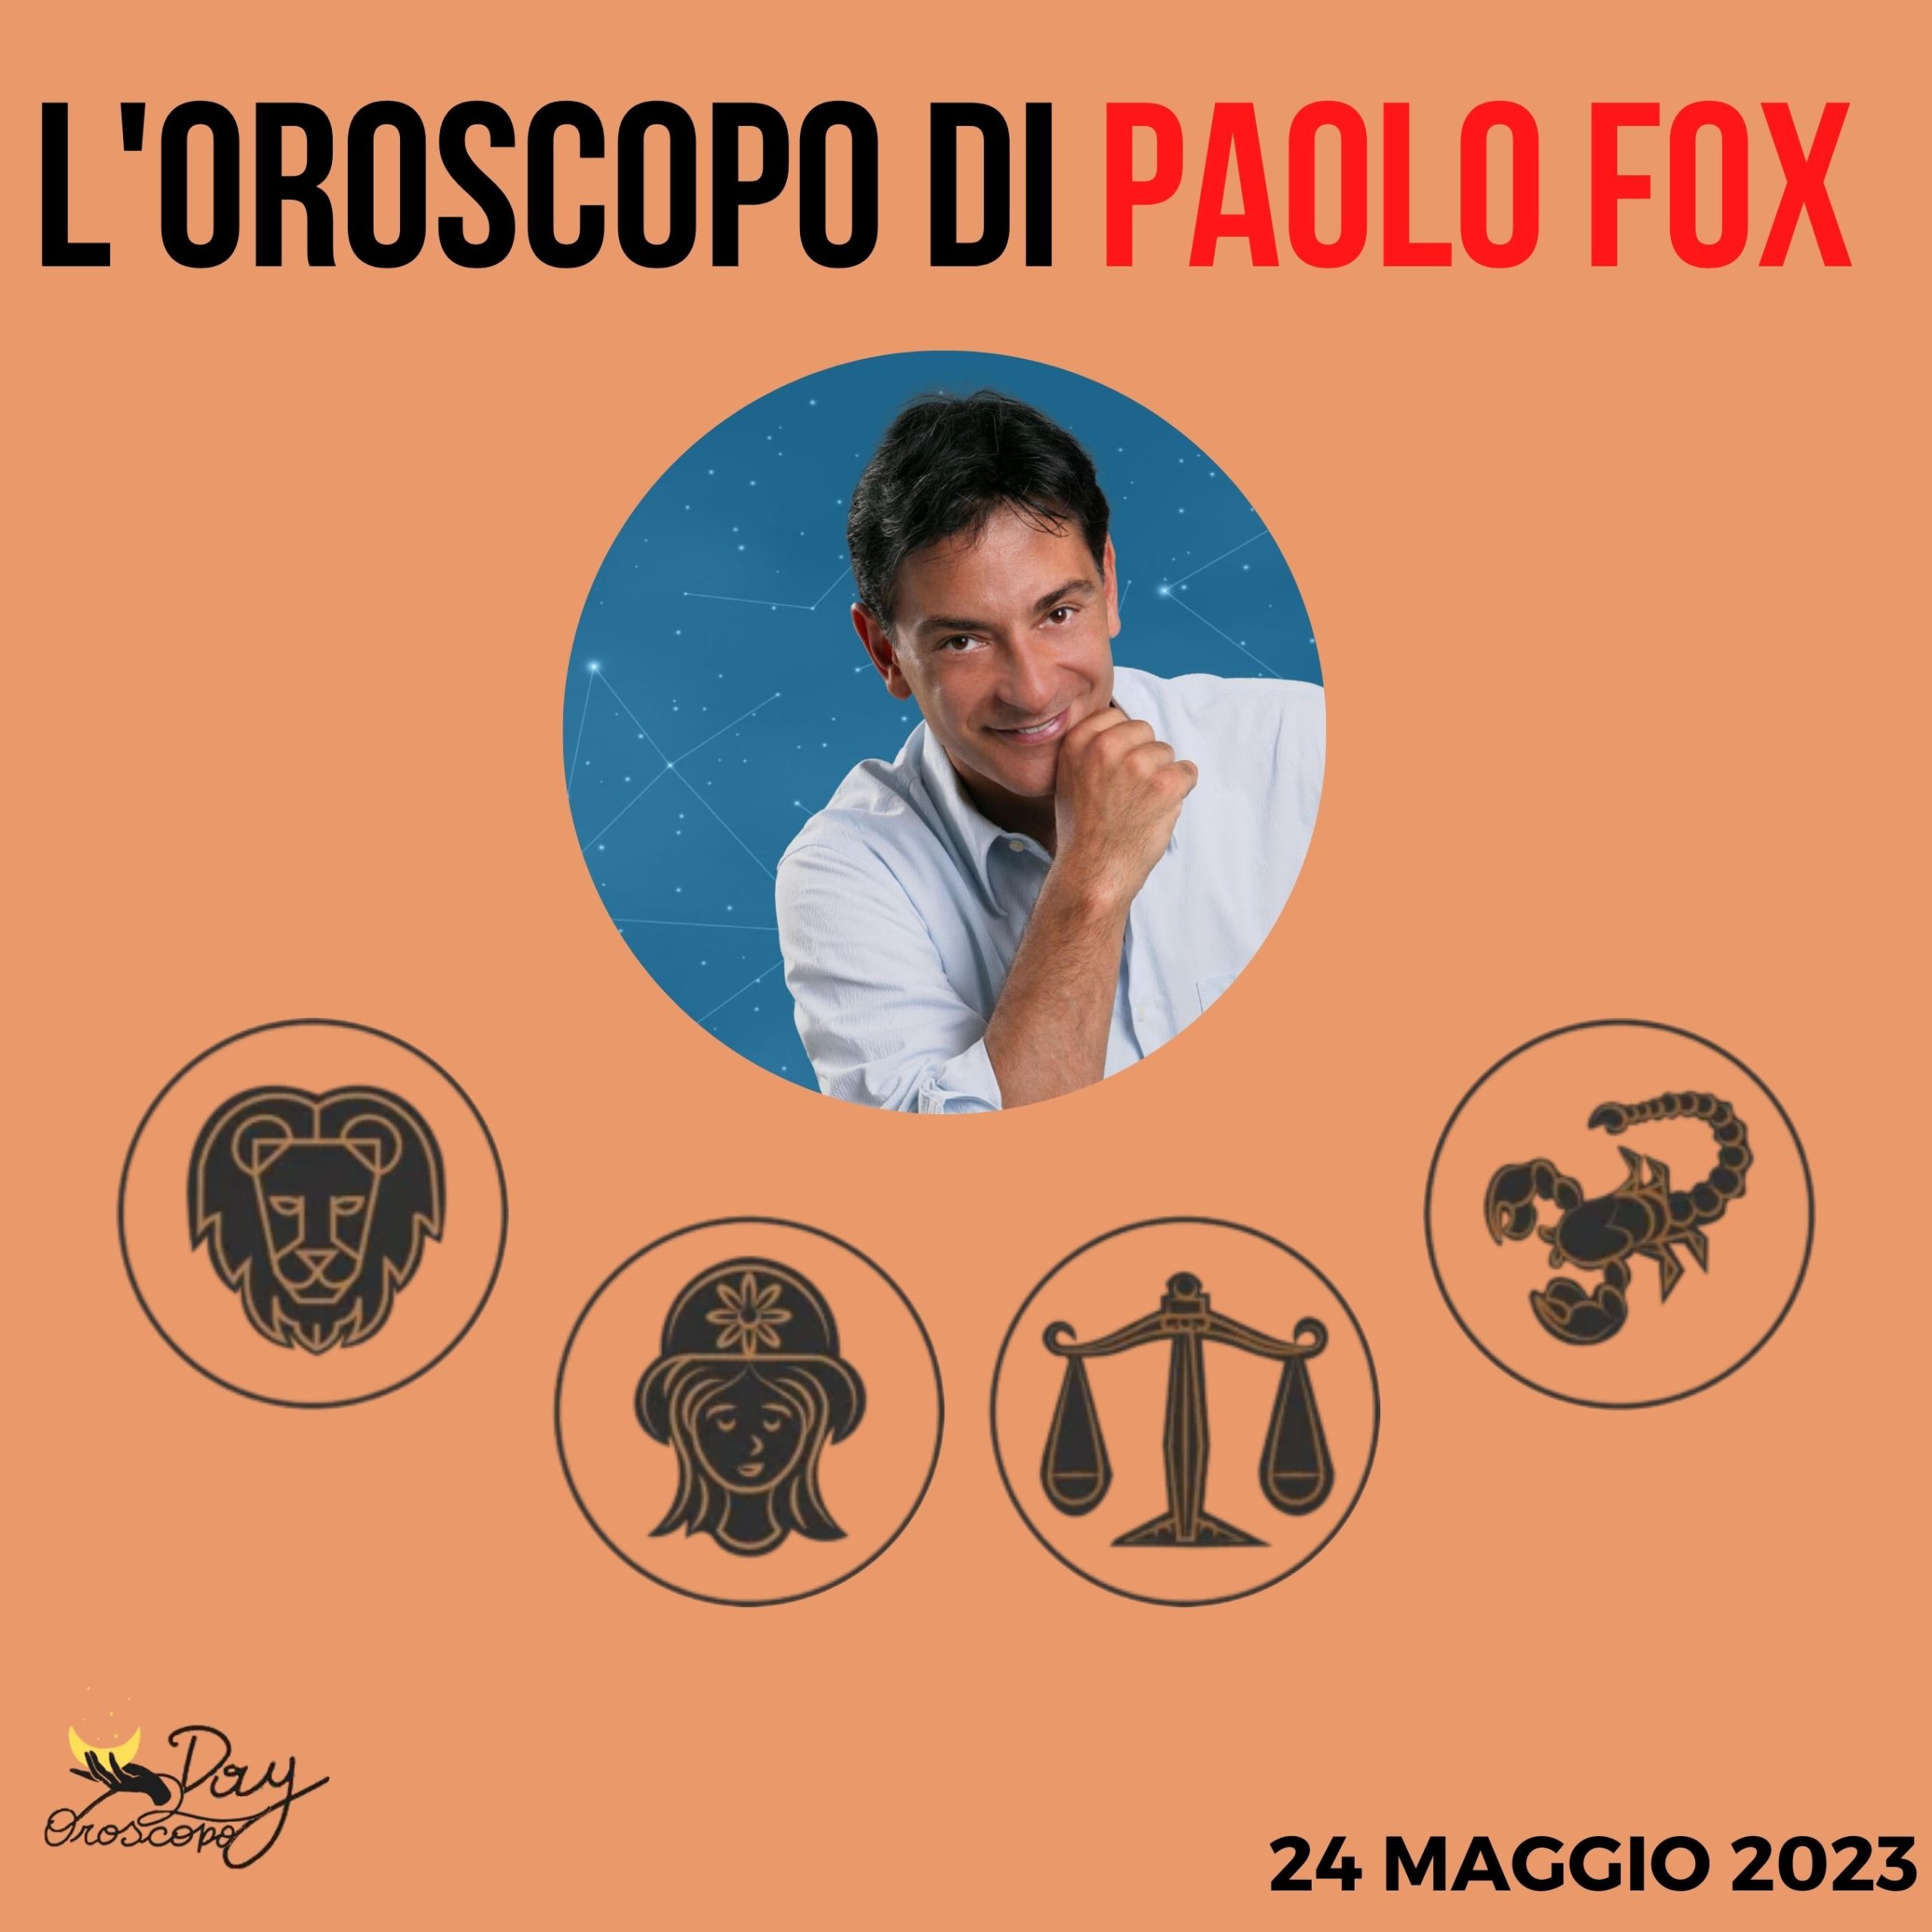 Oroscopo oggi domani Fox 24 maggio Leone Vergine Bilancia Scorpione